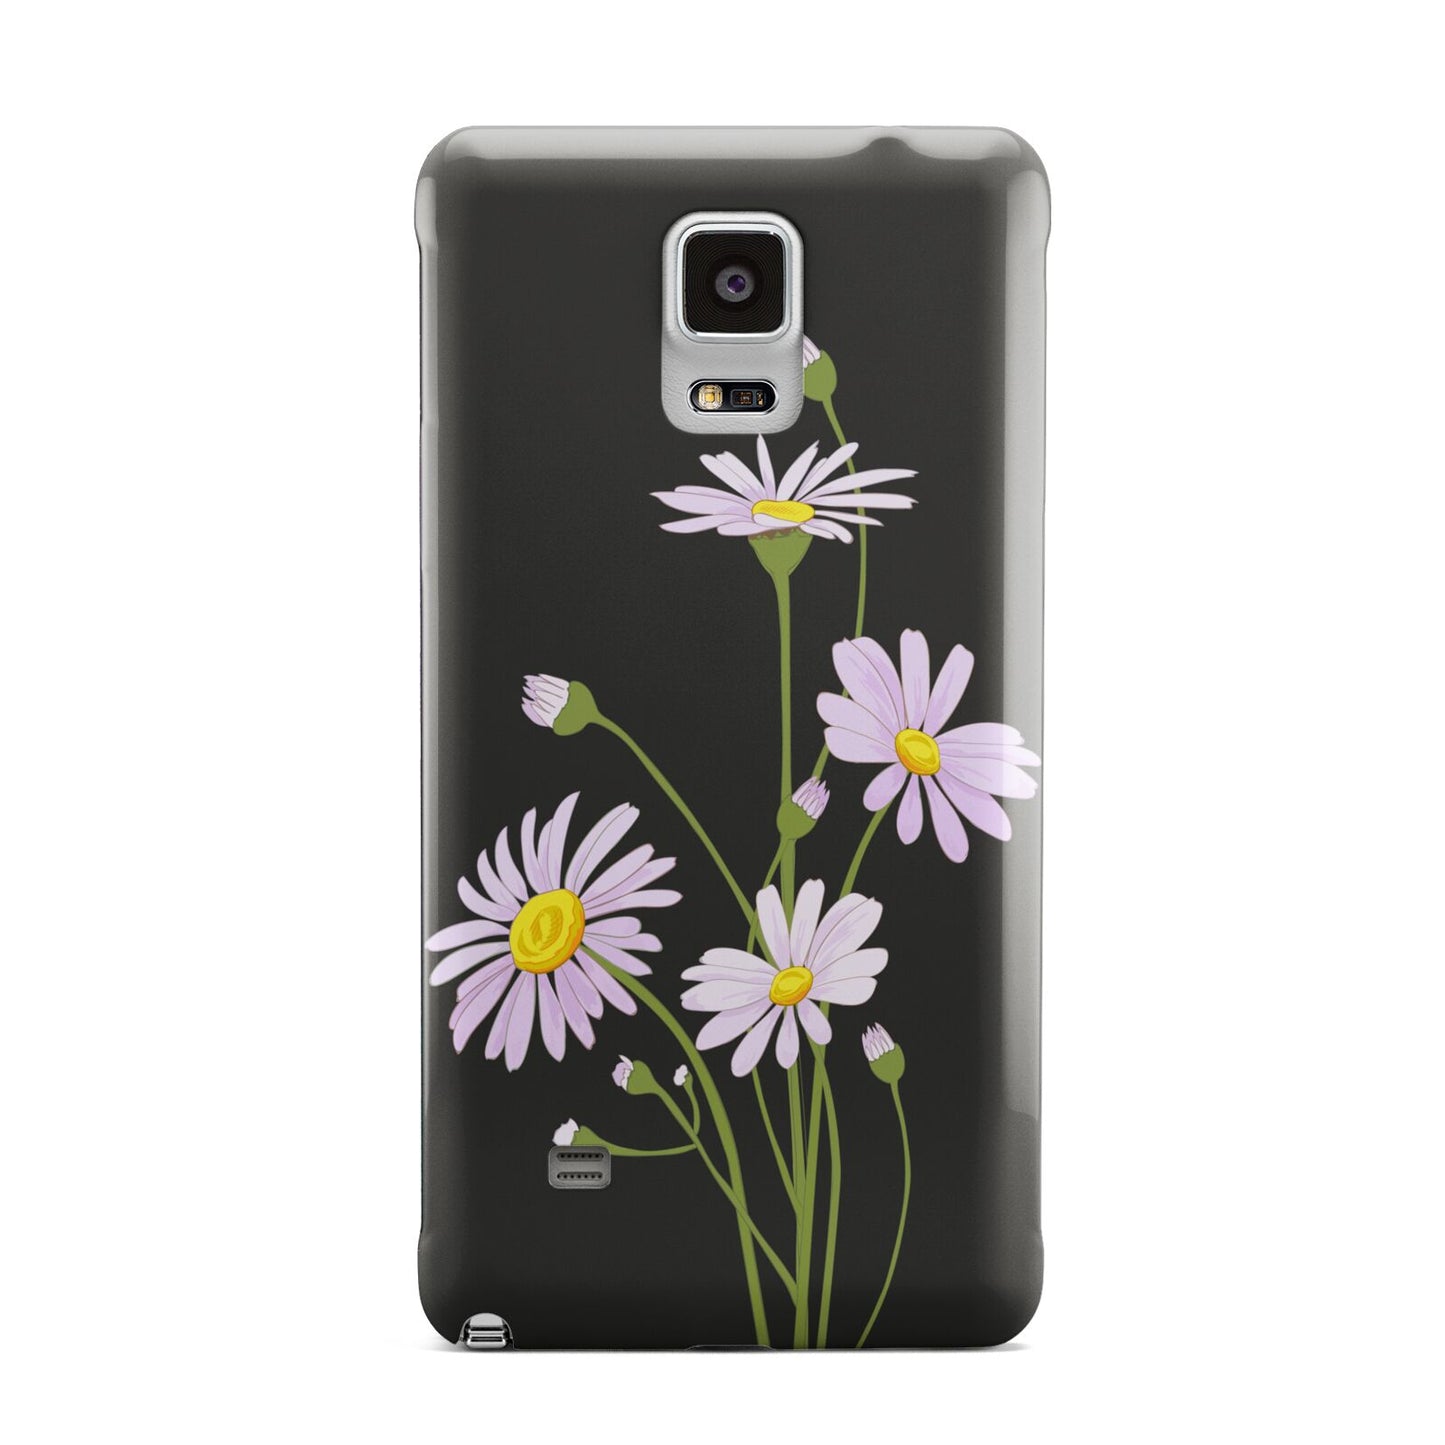 Wild Daisies Samsung Galaxy Note 4 Case